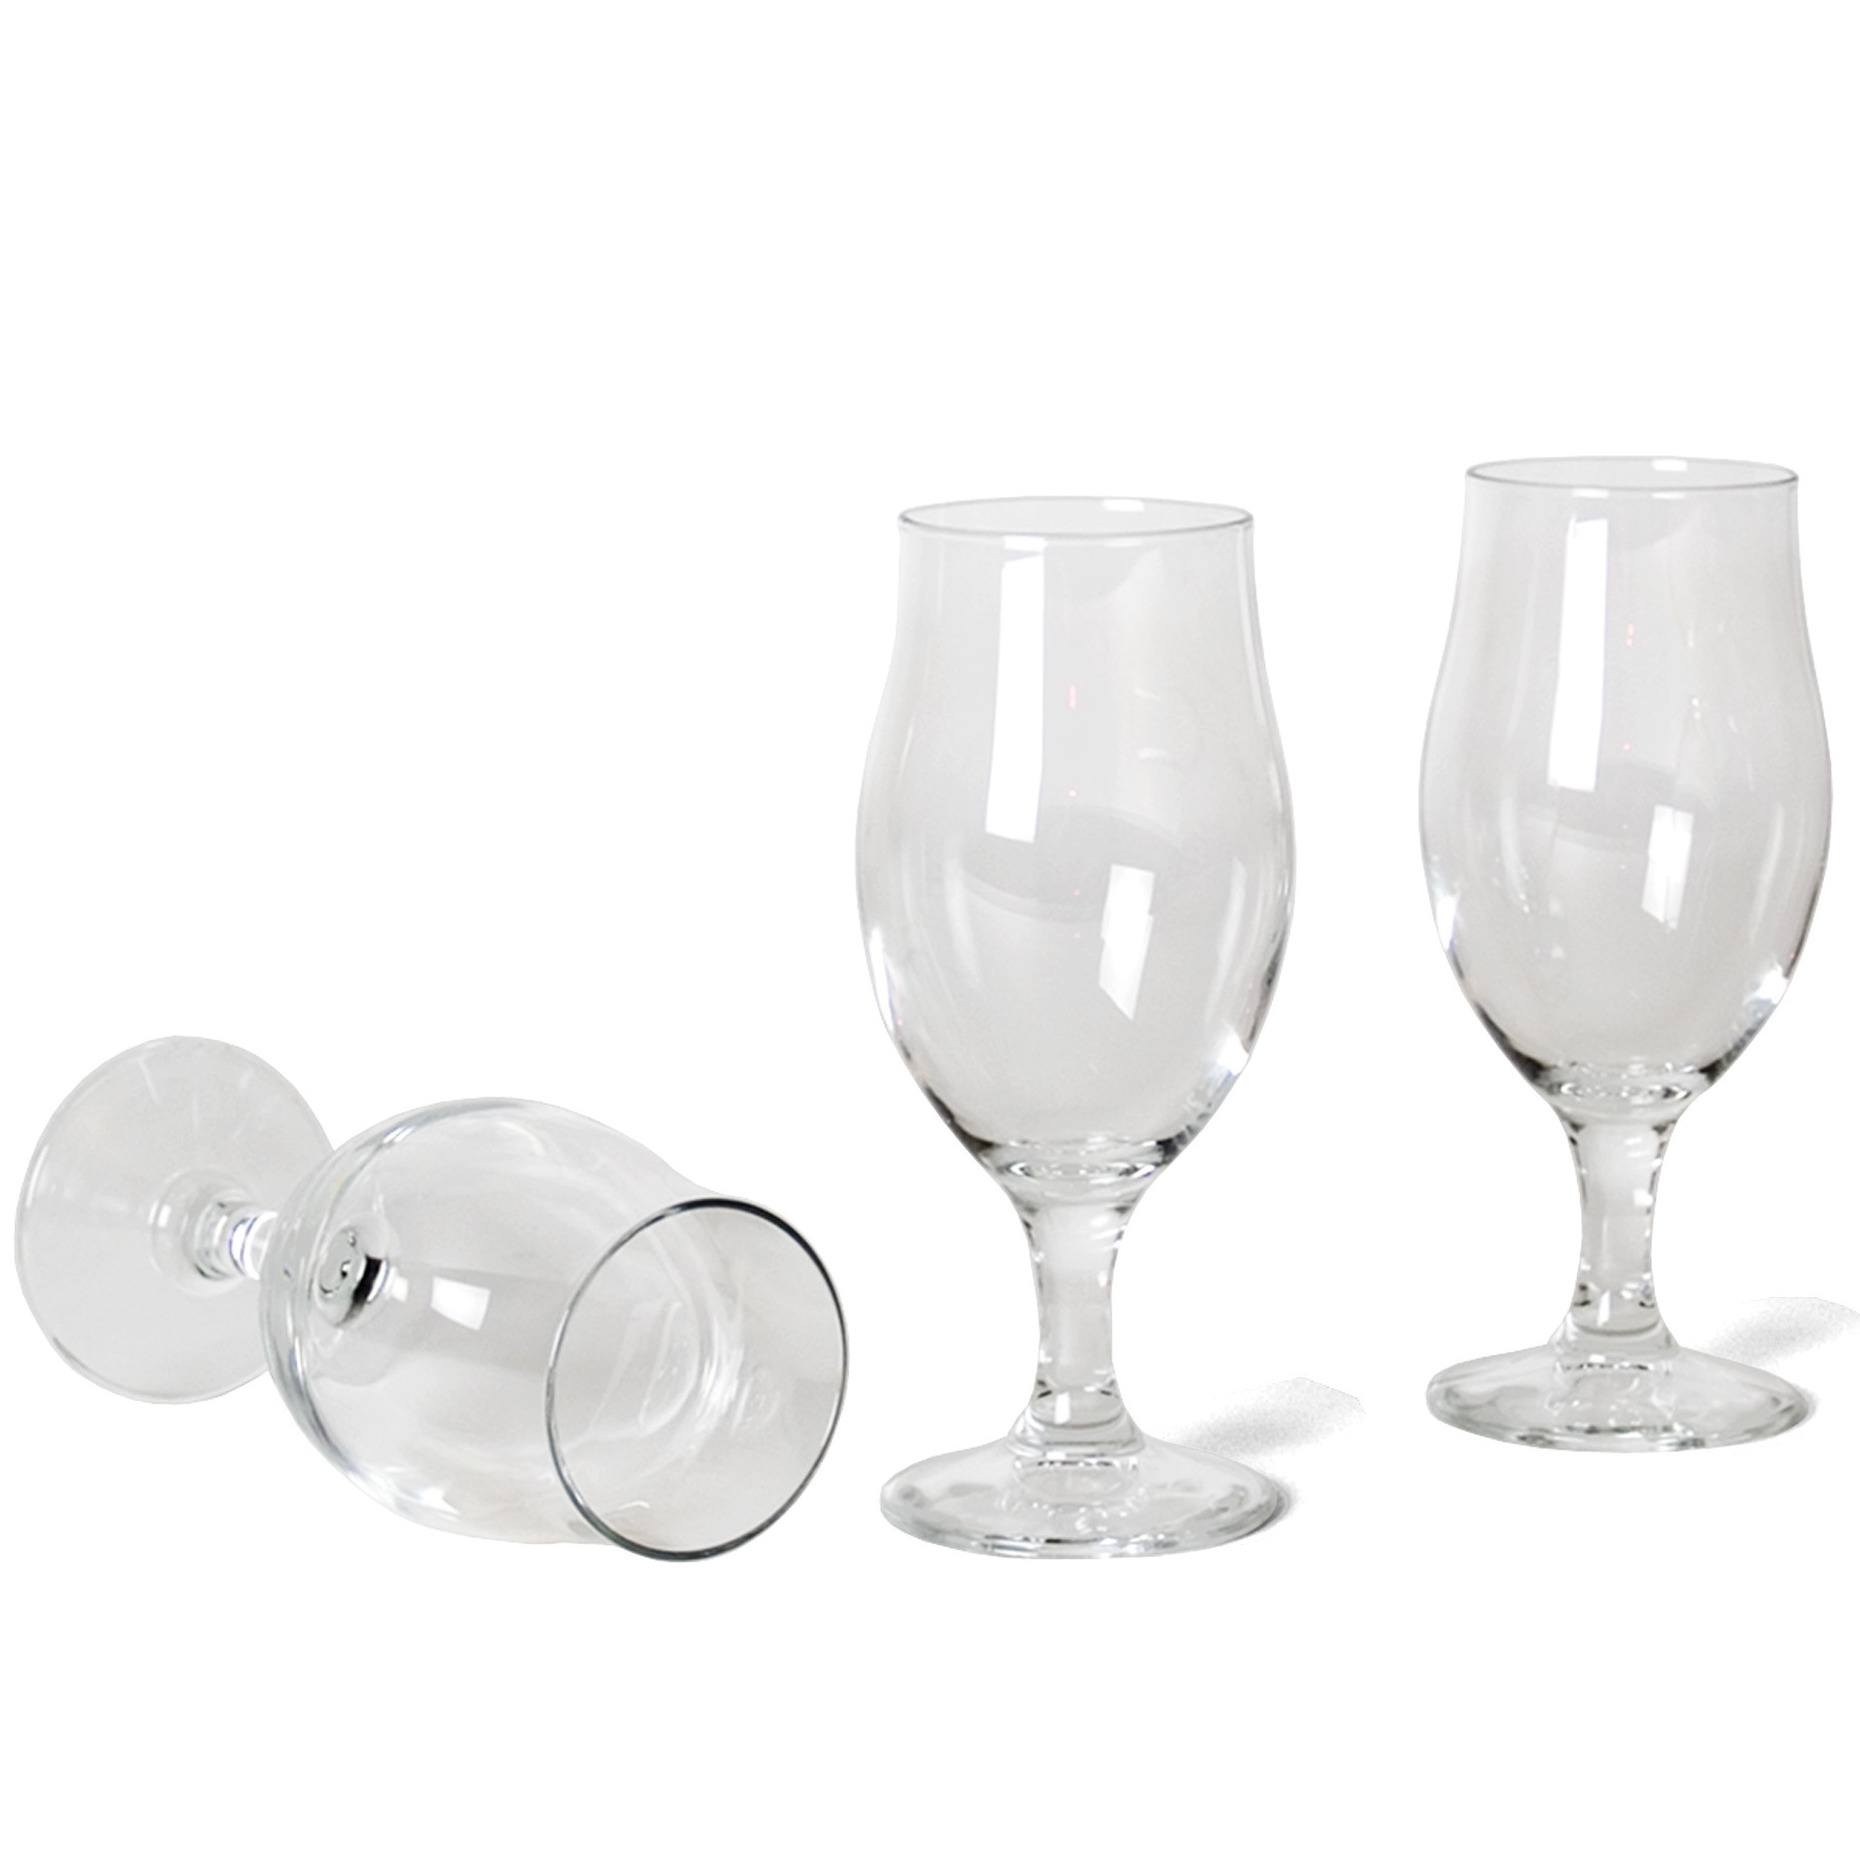 Bormioli Bierglazen - 3x stuks - speciaalbier glazen - op voet - 520 ml -